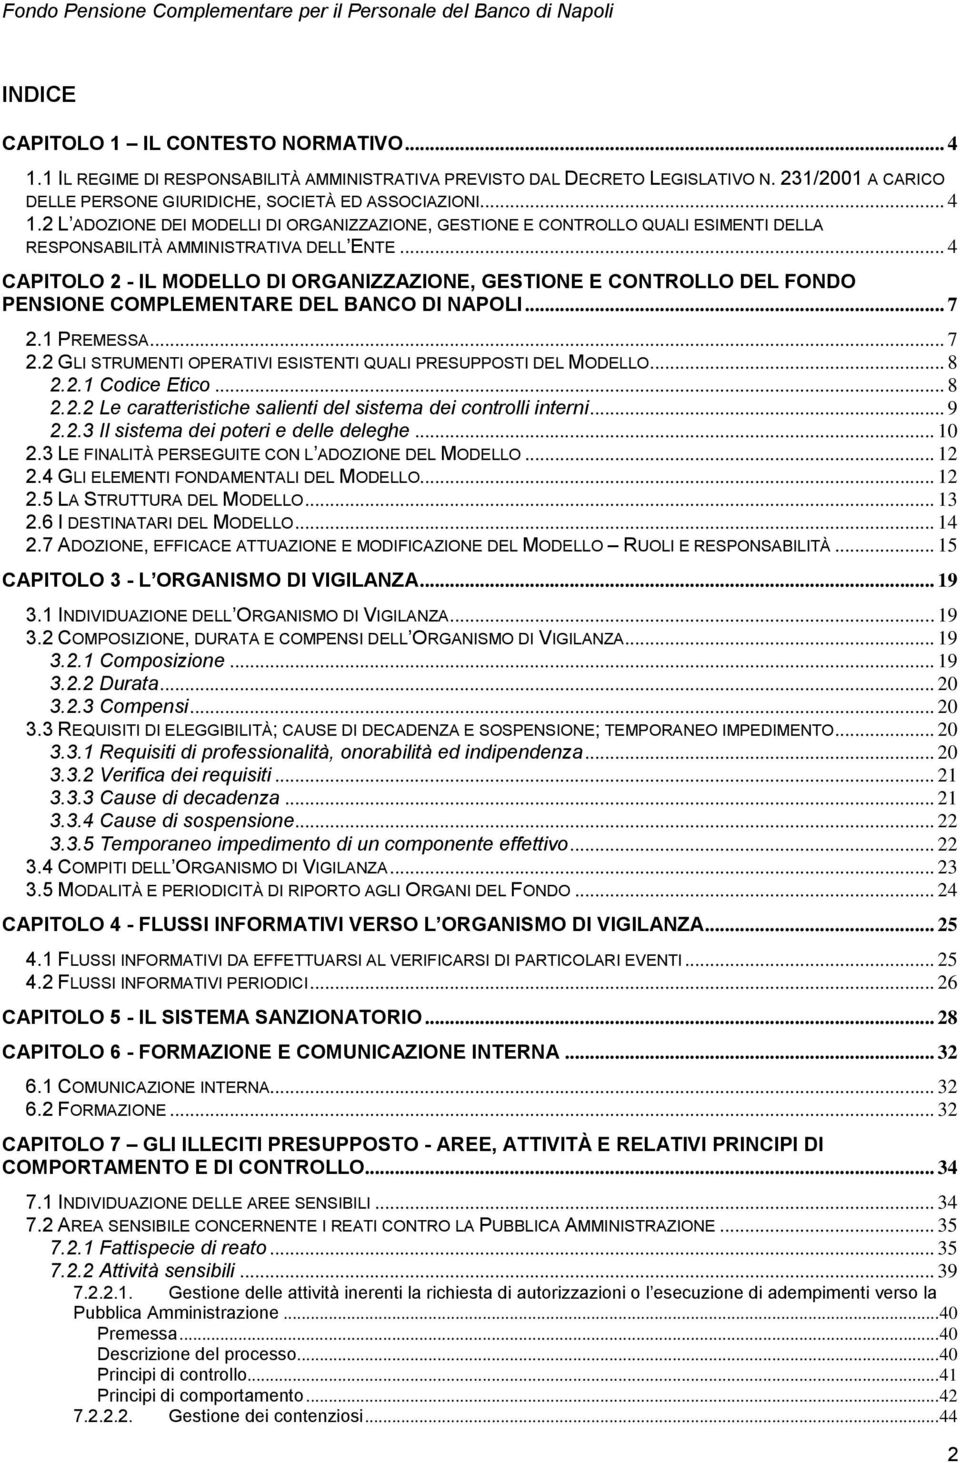 .. 4 CAPITOLO 2 - IL MODELLO DI ORGANIZZAZIONE, GESTIONE E CONTROLLO DEL FONDO PENSIONE COMPLEMENTARE DEL BANCO DI NAPOLI... 7 2.1 PREMESSA... 7 2.2 GLI STRUMENTI OPERATIVI ESISTENTI QUALI PRESUPPOSTI DEL MODELLO.